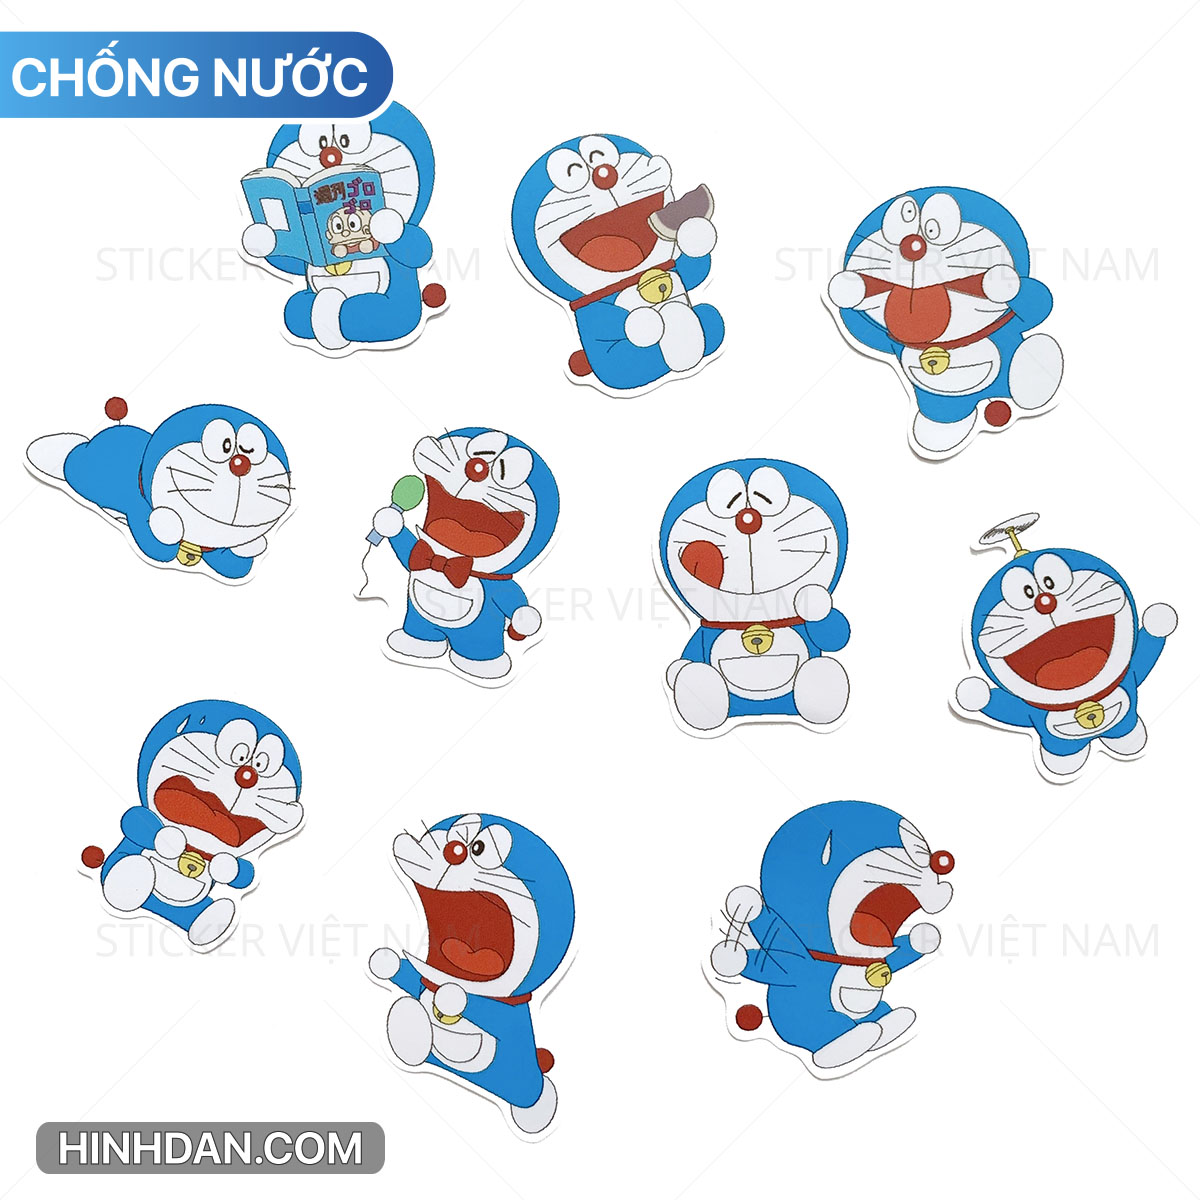 Bán sticker Doraemon kute: Với những chiếc sticker Doraemon kute, bạn sẽ có cơ hội thể hiện phong cách trẻ trung và đáng yêu của mình. Hãy sắm ngay những chiếc sticker này để trang trí laptop, điện thoại hay bất kỳ đồ vật nào khác. Ngoài việc mang lại sự dễ thương, các sticker này còn đầy ý nghĩa về tình bạn và tình yêu.